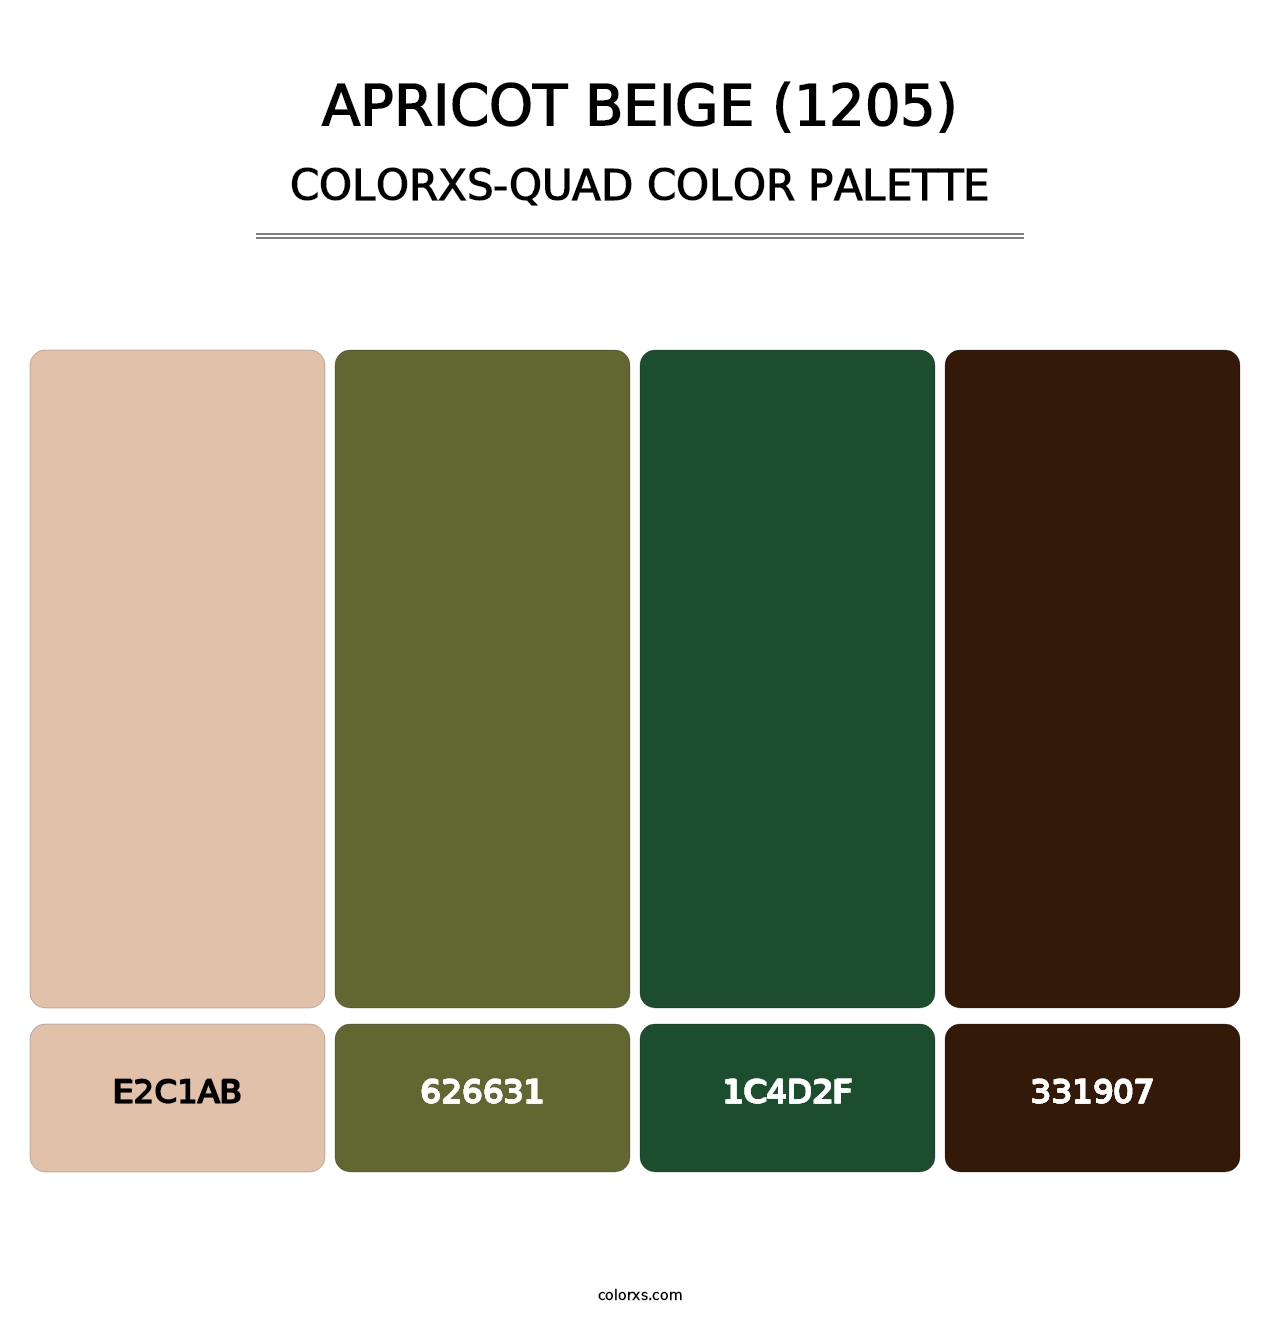 Apricot Beige (1205) - Colorxs Quad Palette